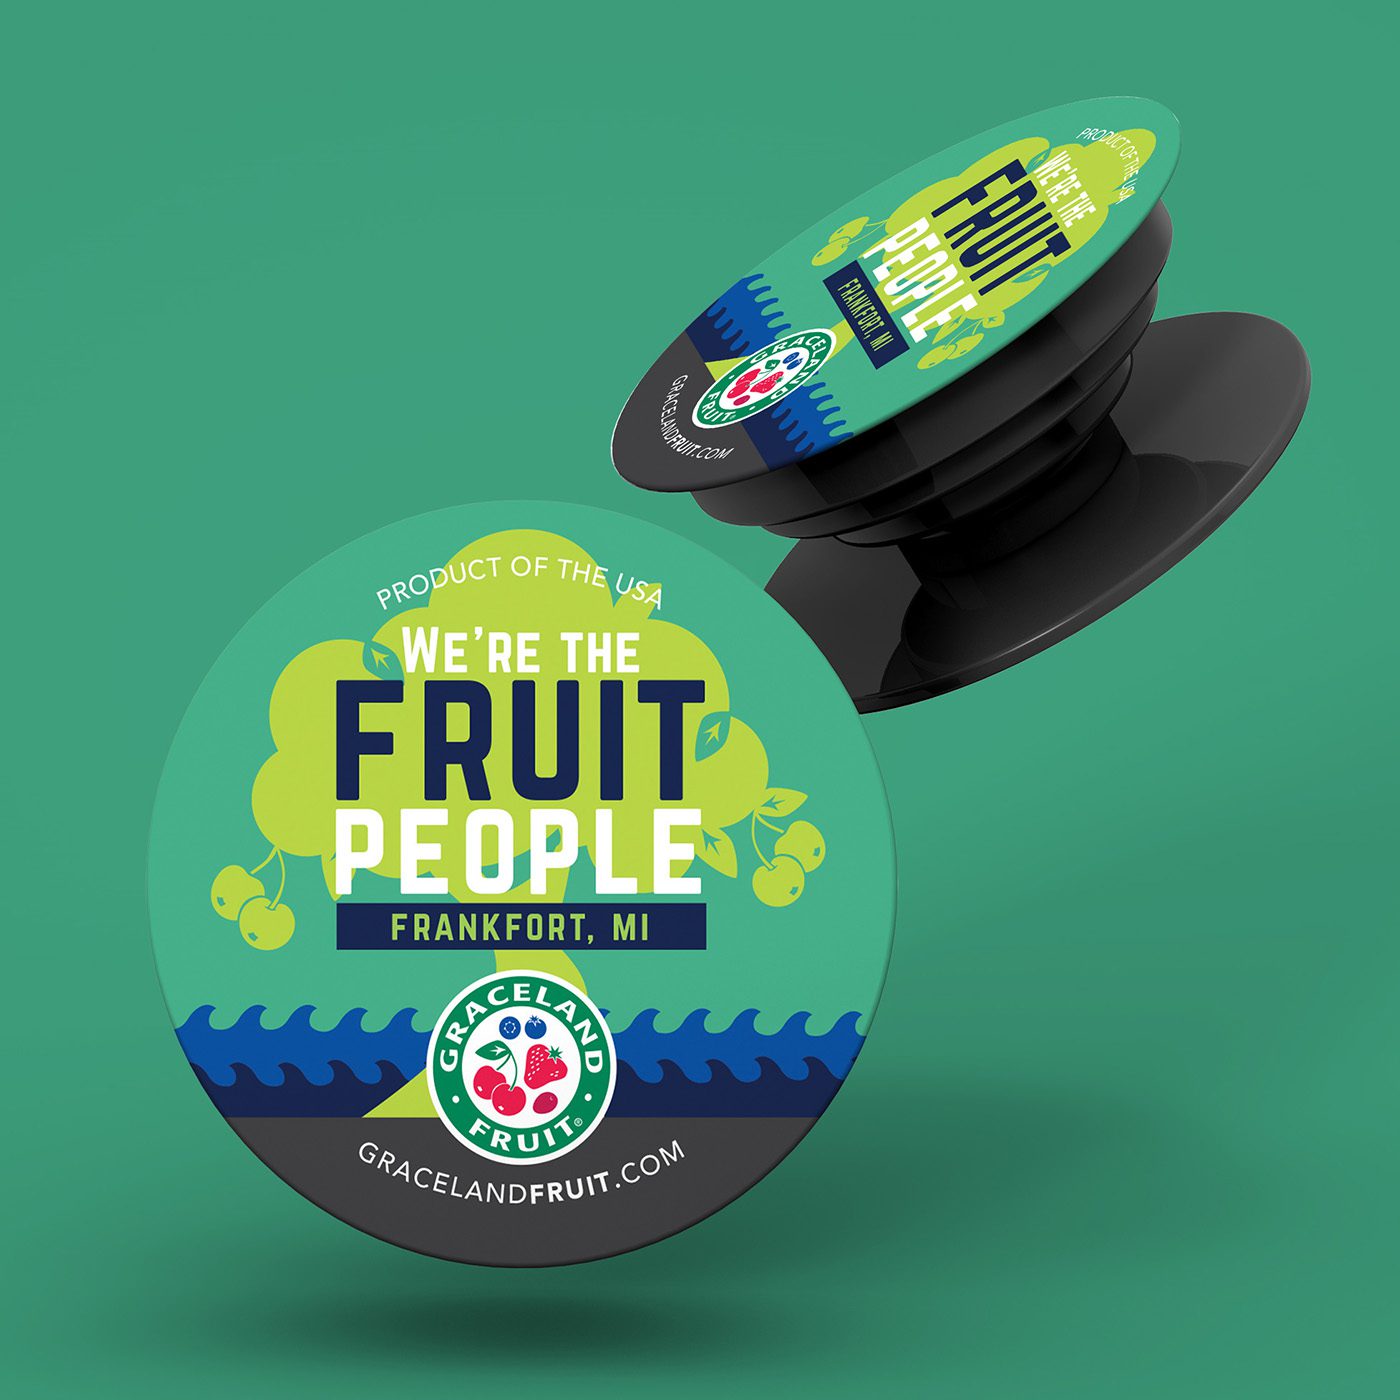 Custom PopSockets Design for Graceland Fruit